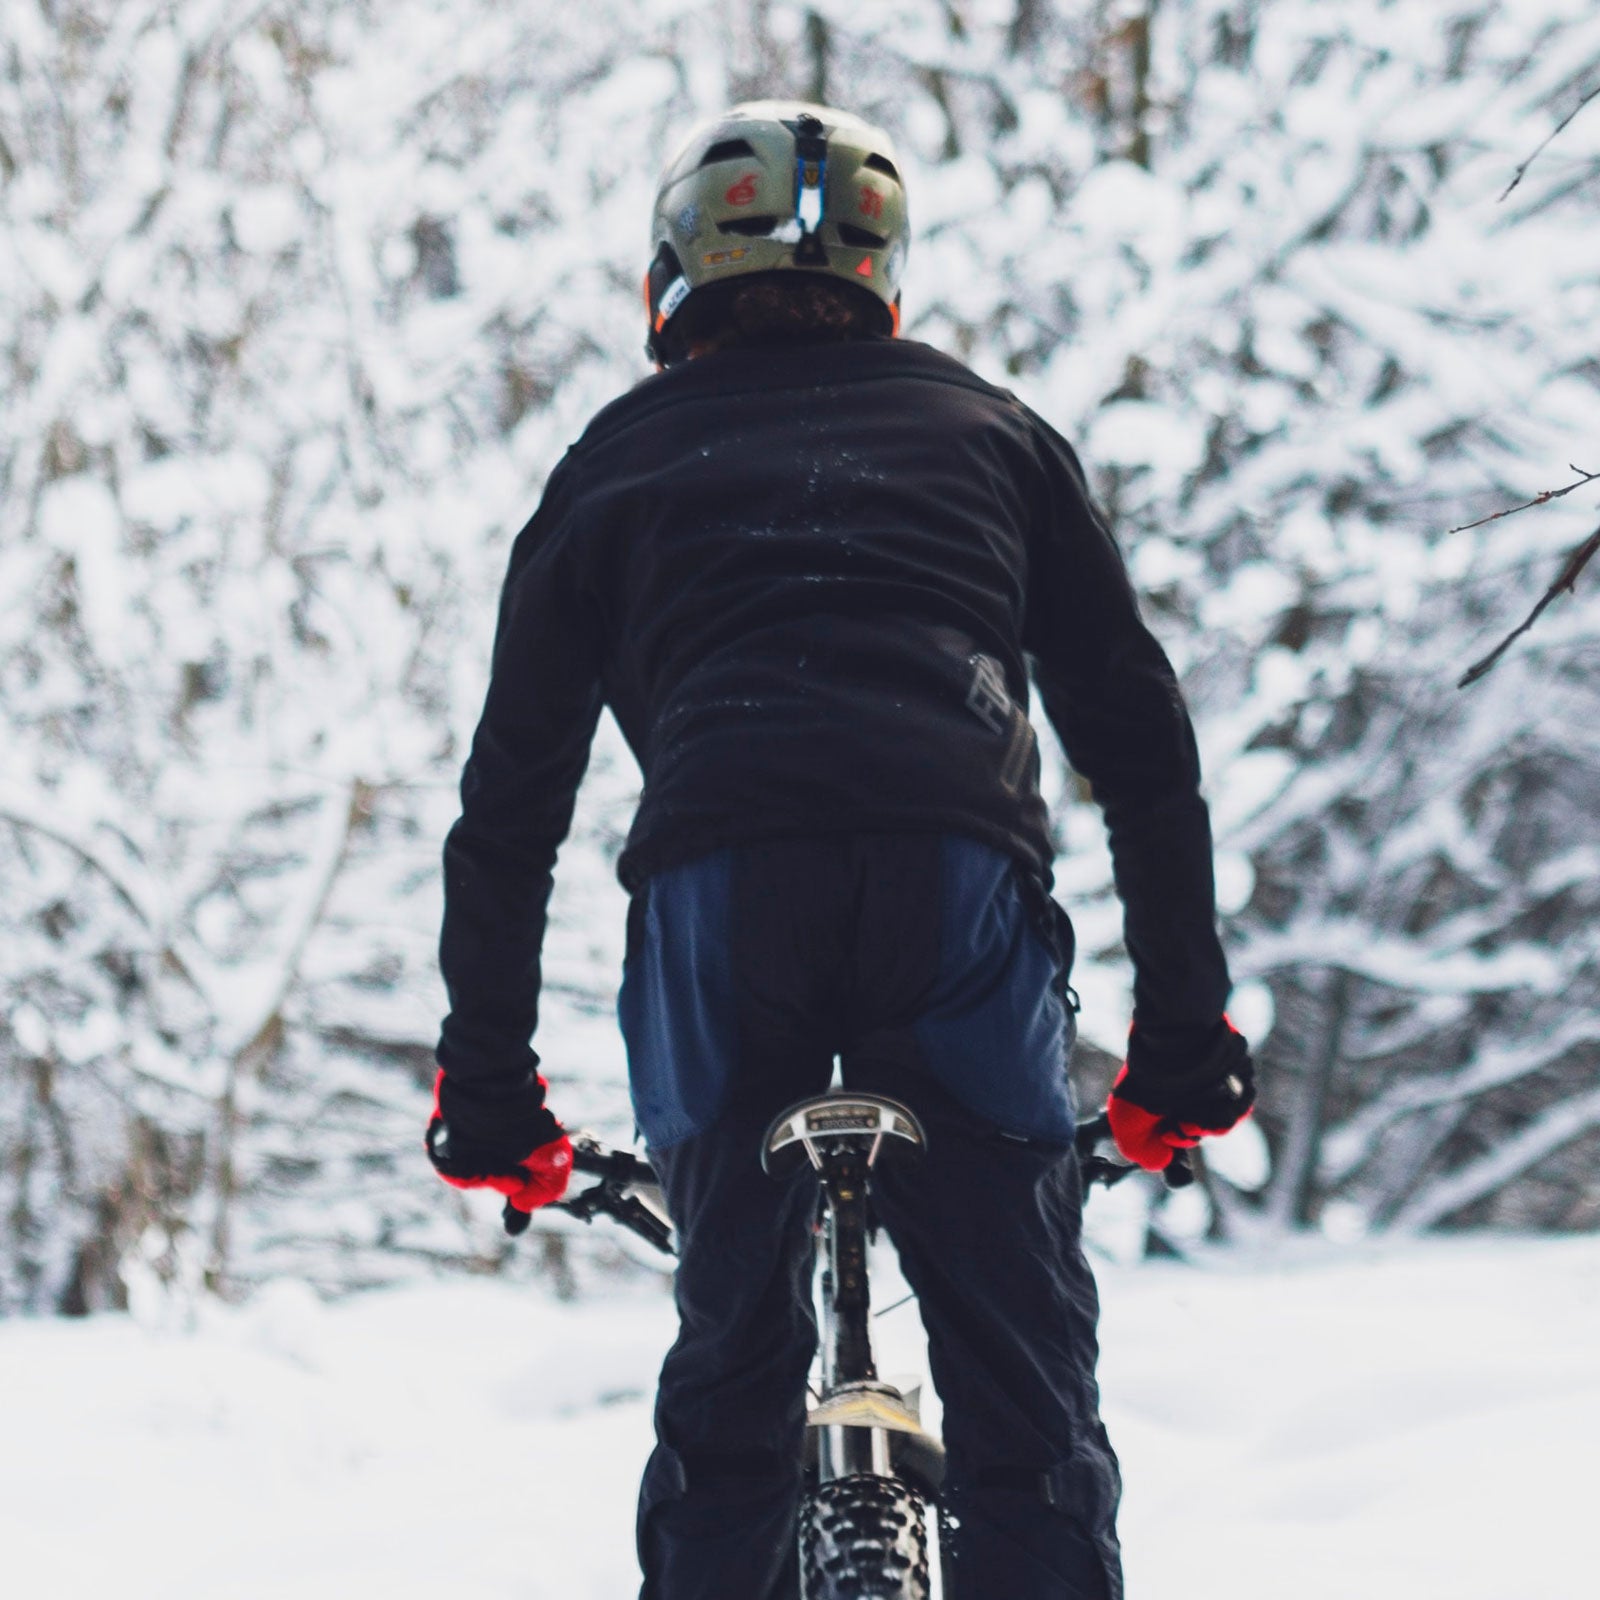 Biking in Winter: Gearing Up